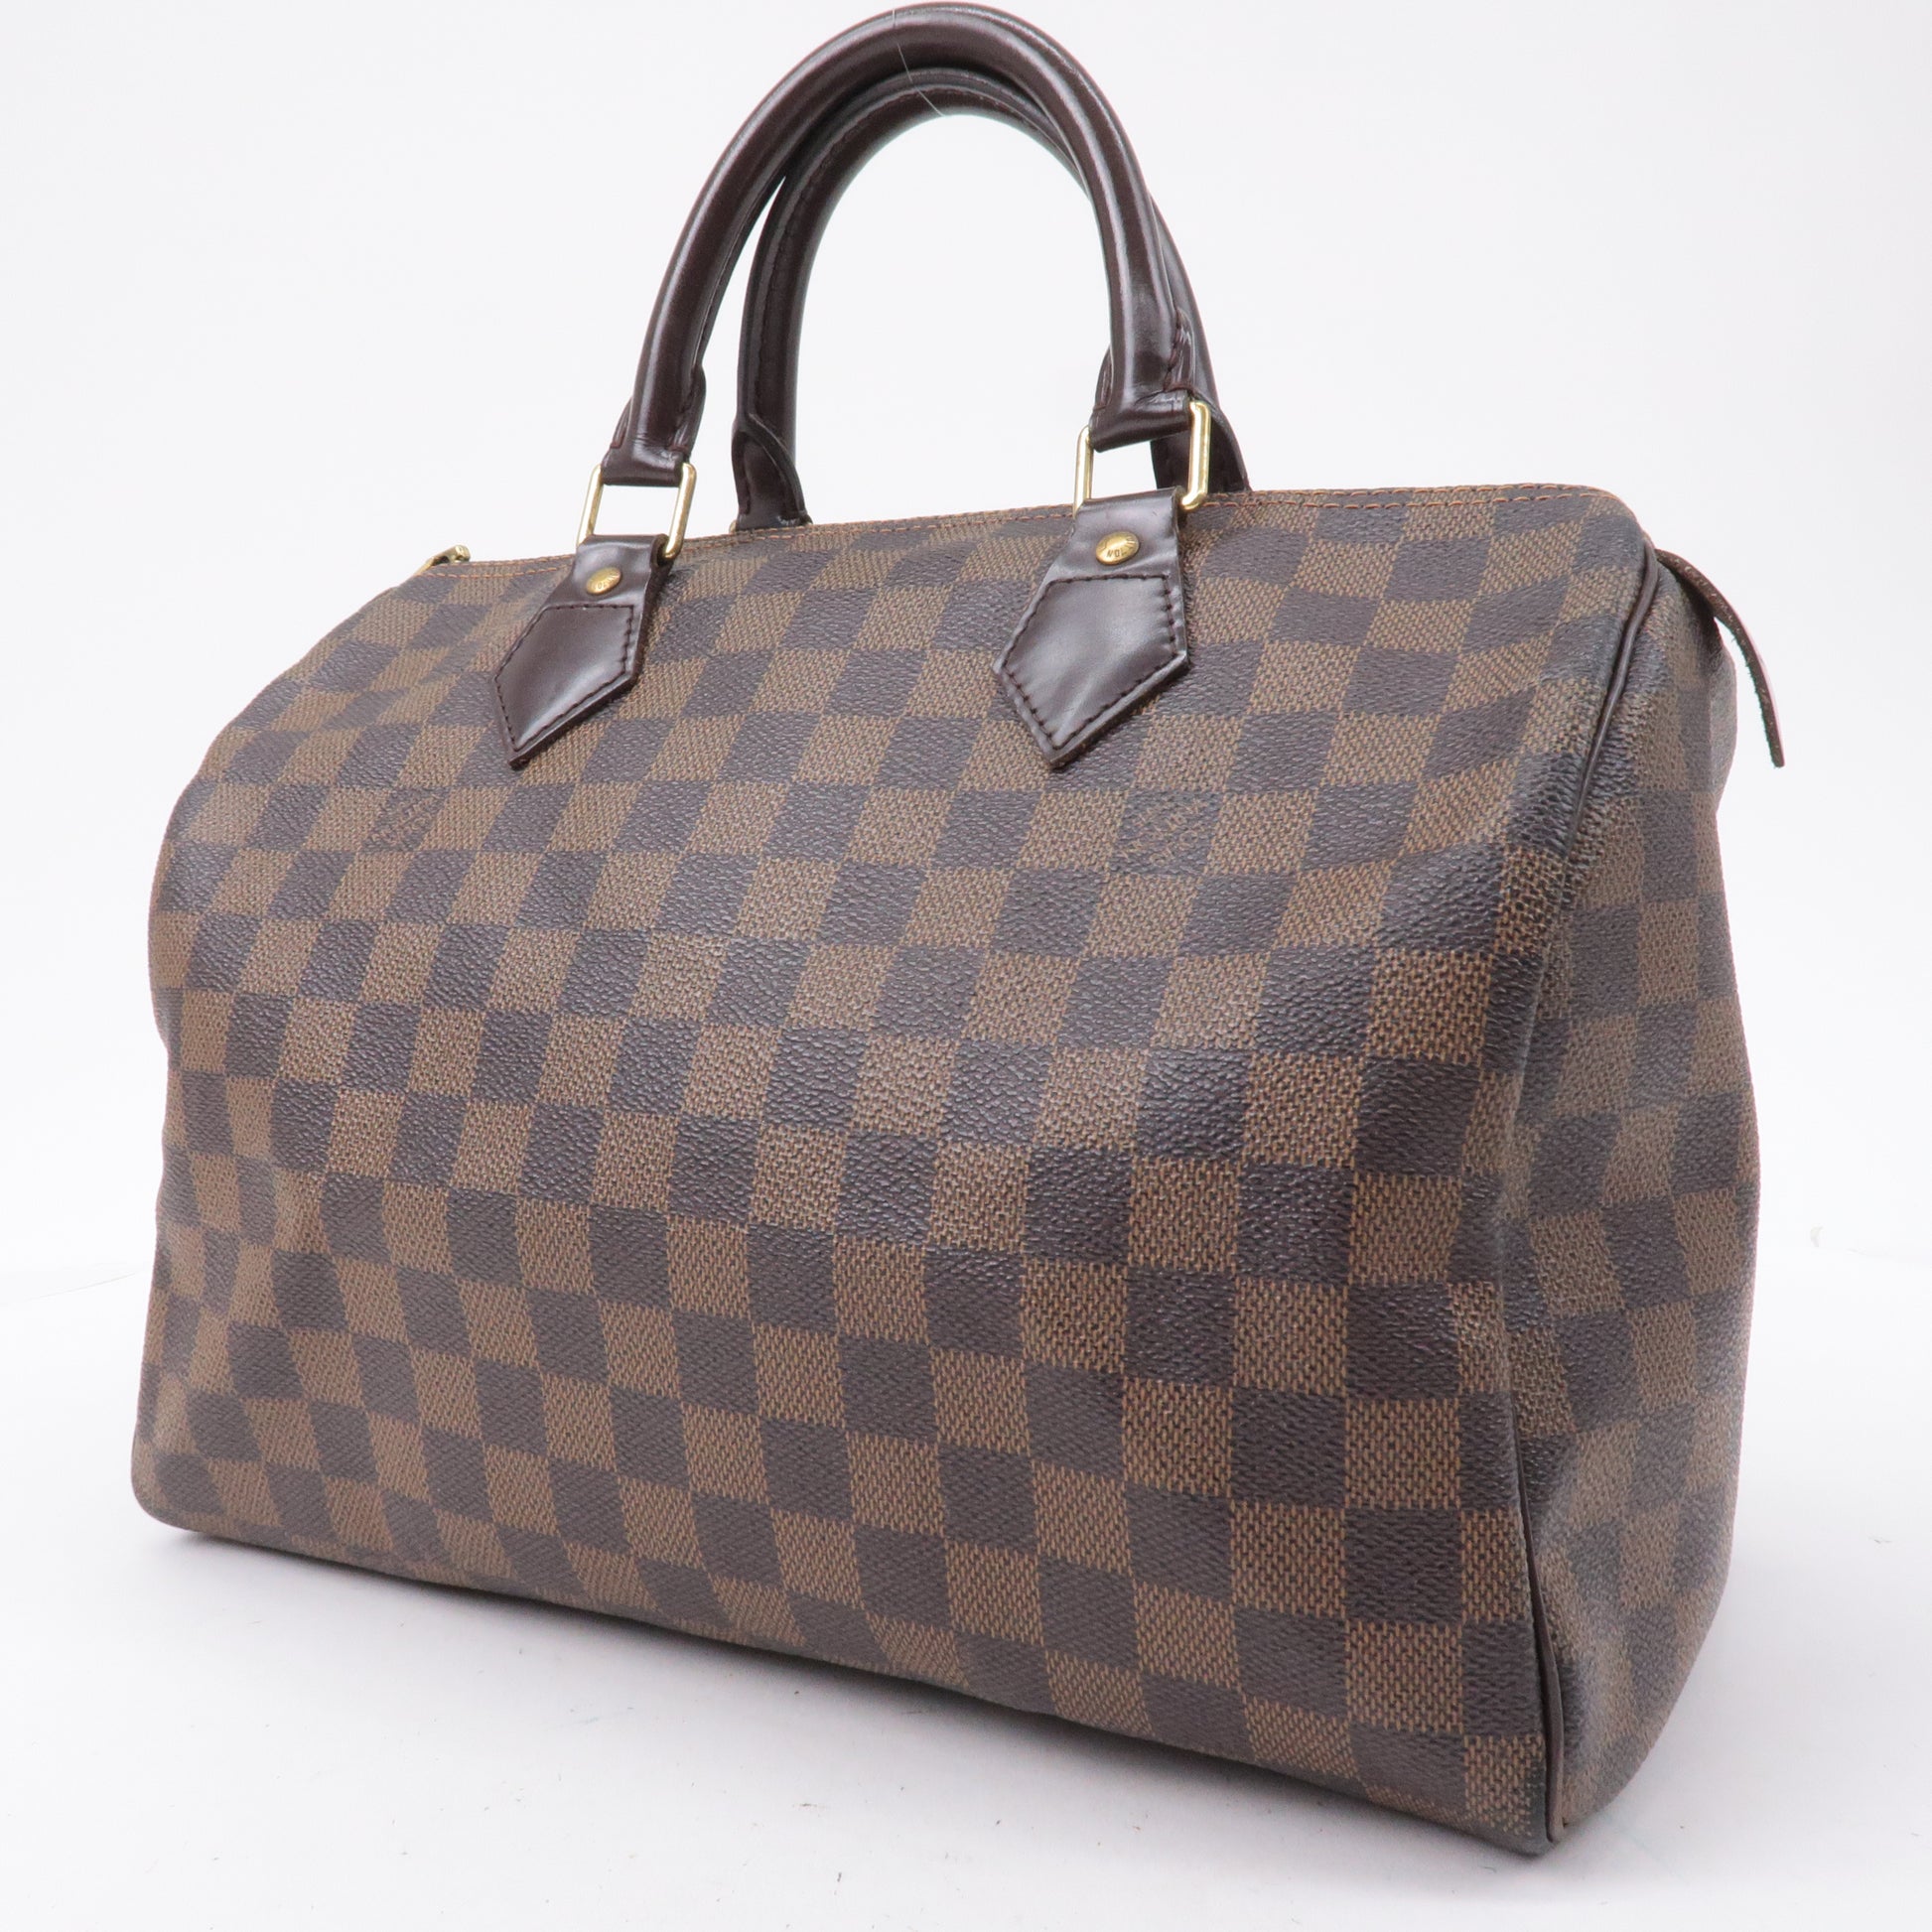 Louis Vuitton Damier Ebene Speedy 30 Boston Bag